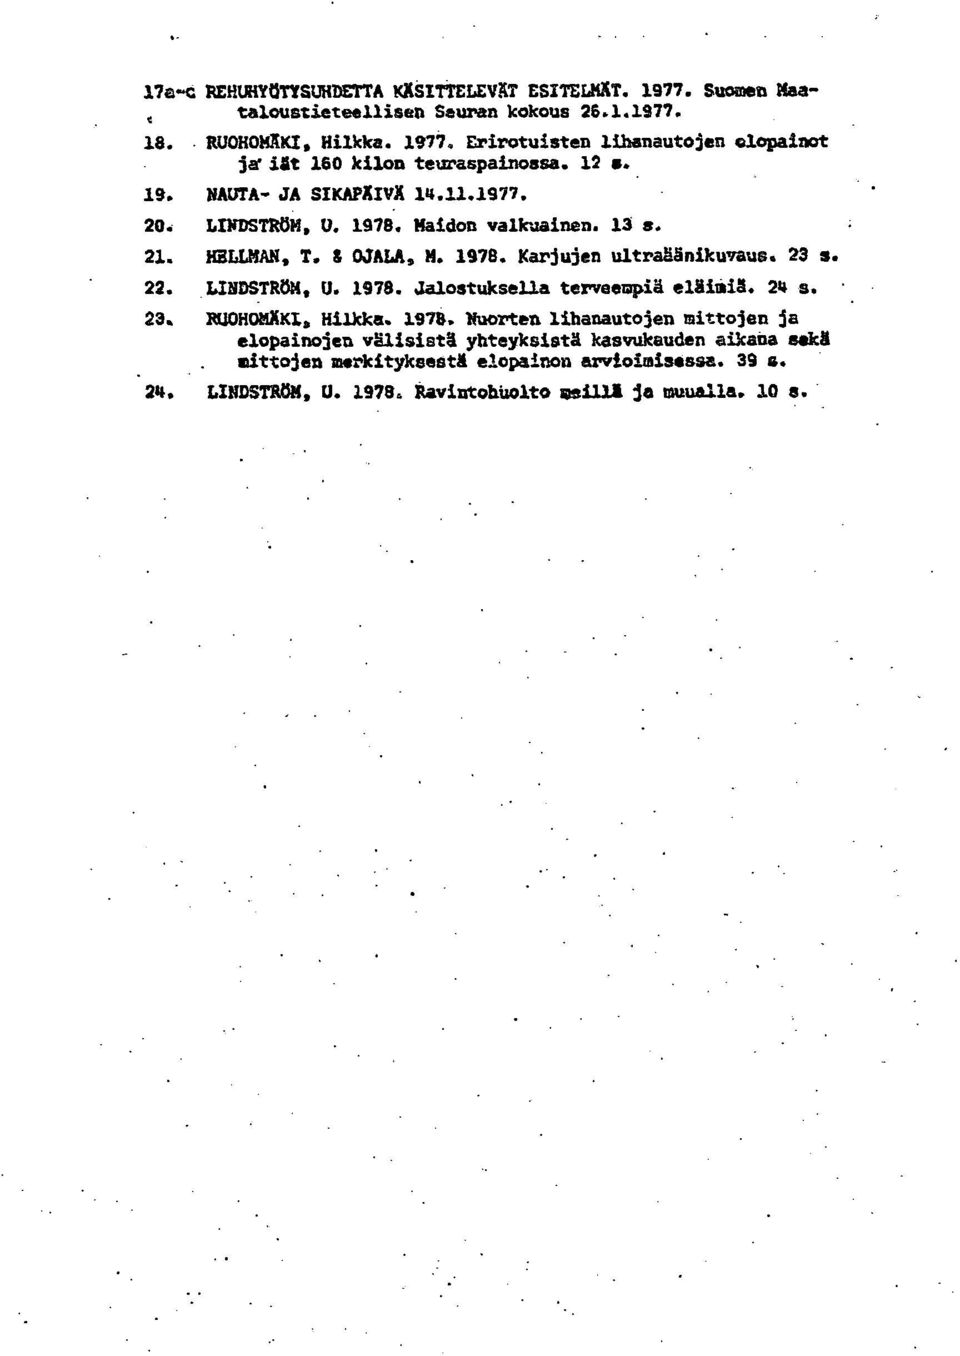 24 s. RUOHONKKX, Hilkka. 1978. Vuorten lihanautojen mittojen ja elopainojen välisistä yhteyksistä kasvukauden aikana sekä.